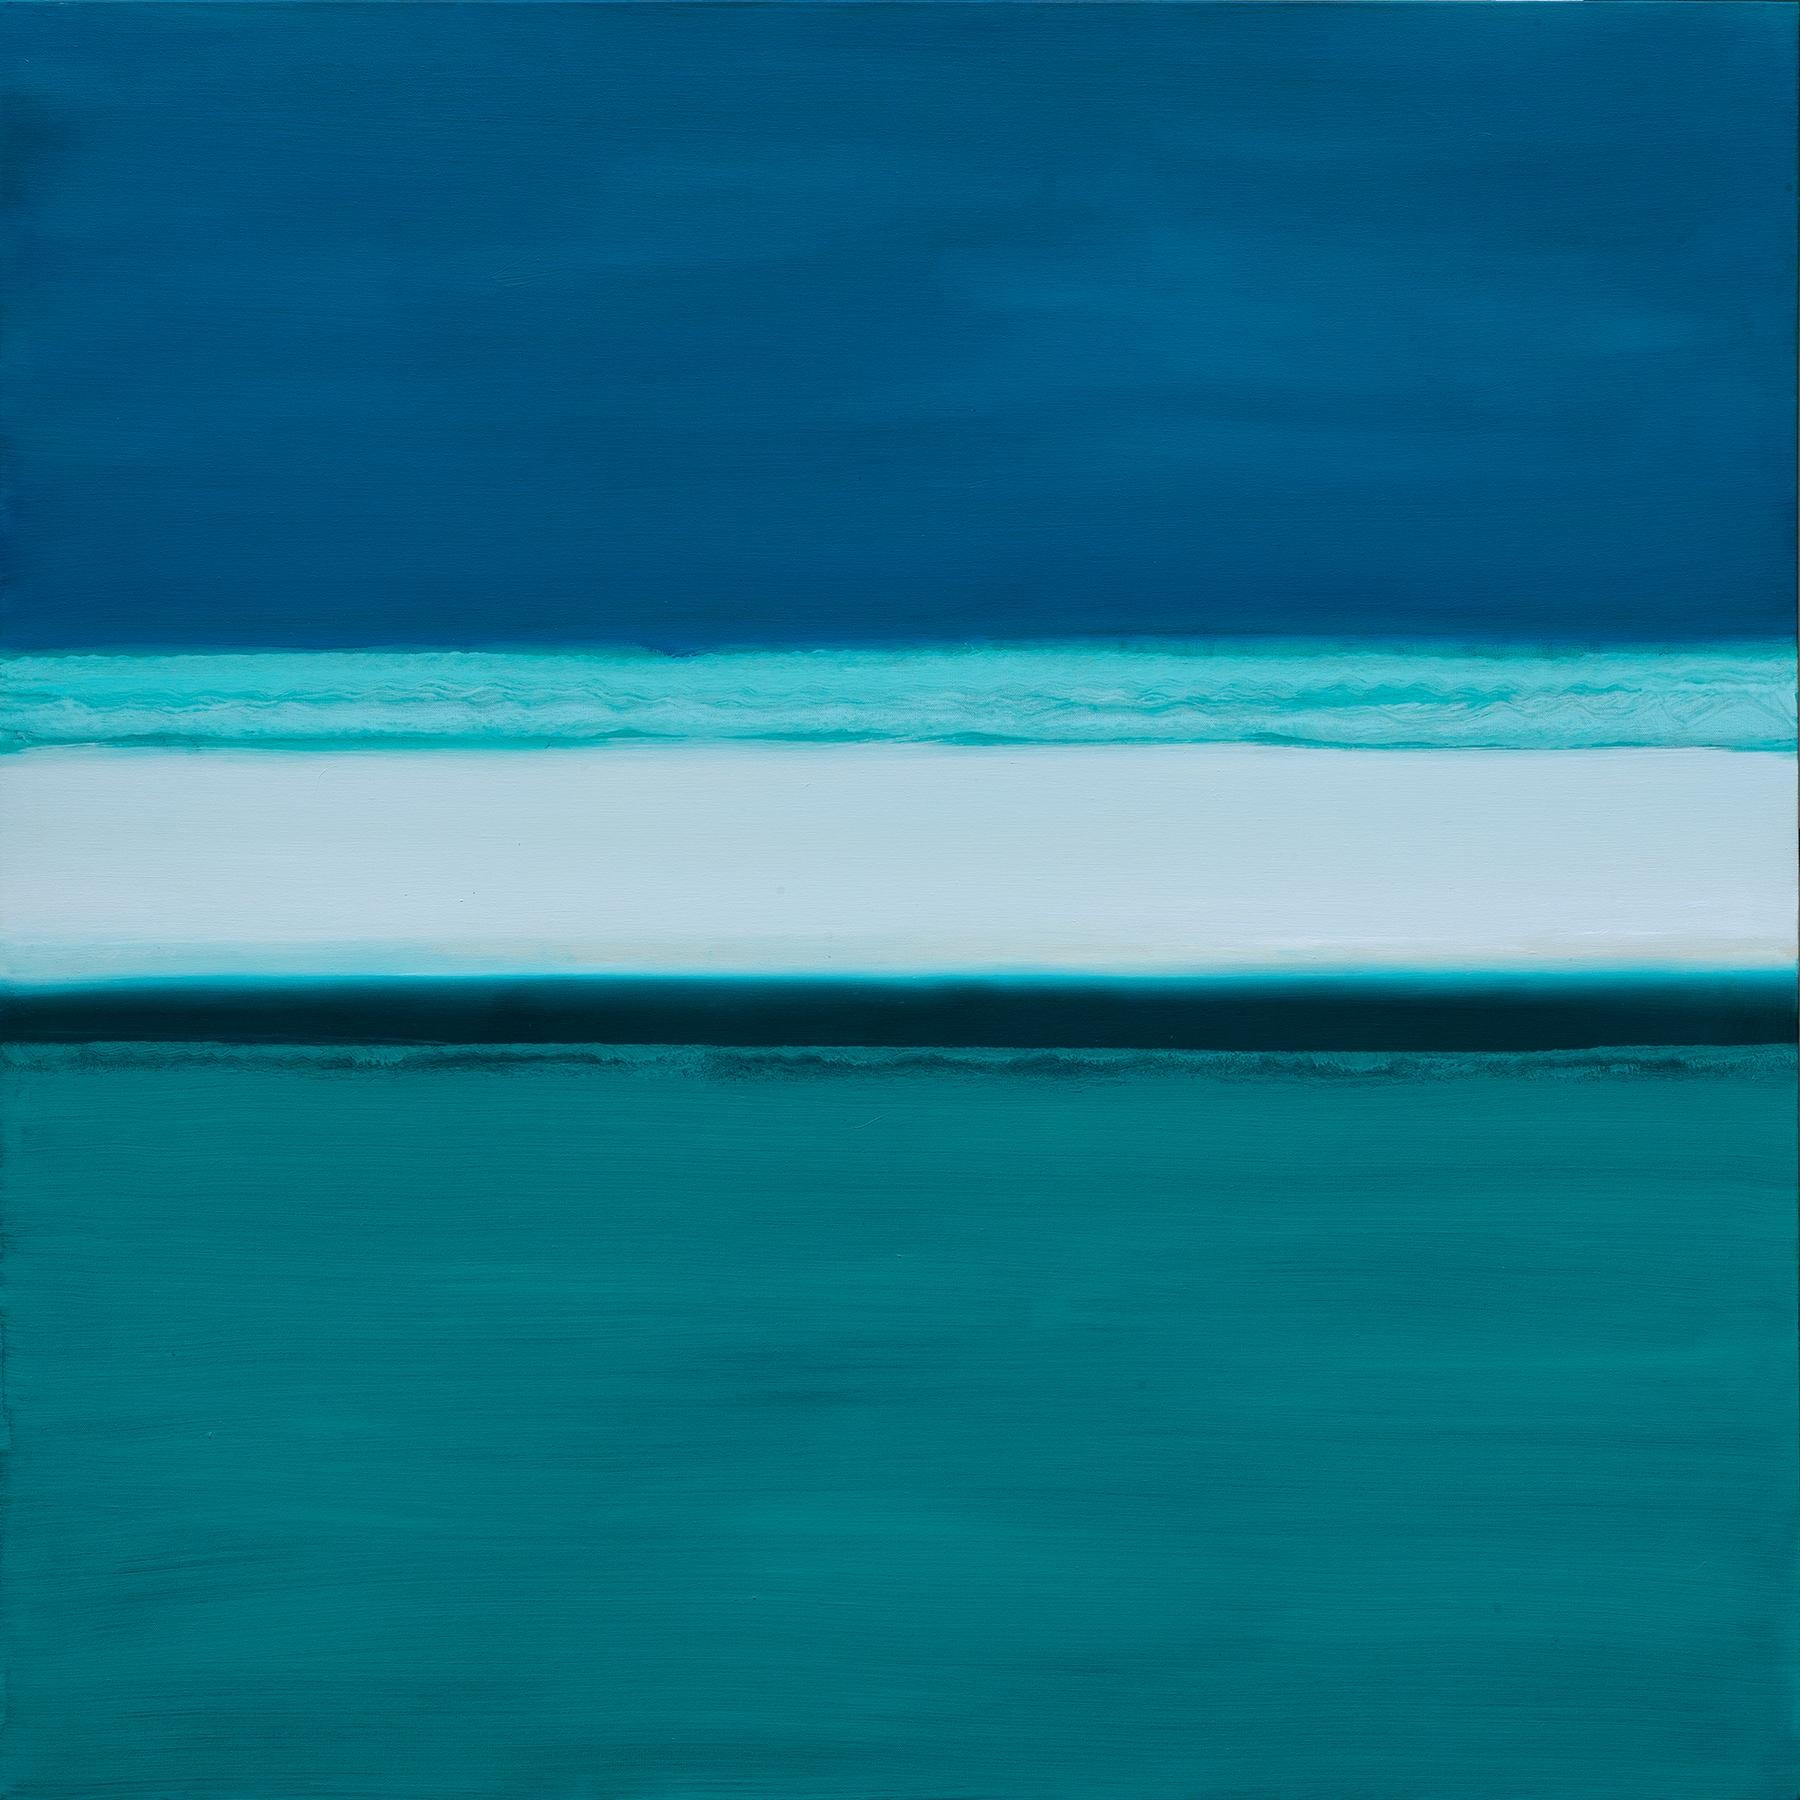 Abstract Painting Joseph McAleer - Peinture géométrique abstraite « River of Dreams » avec eau verte et ciel bleu